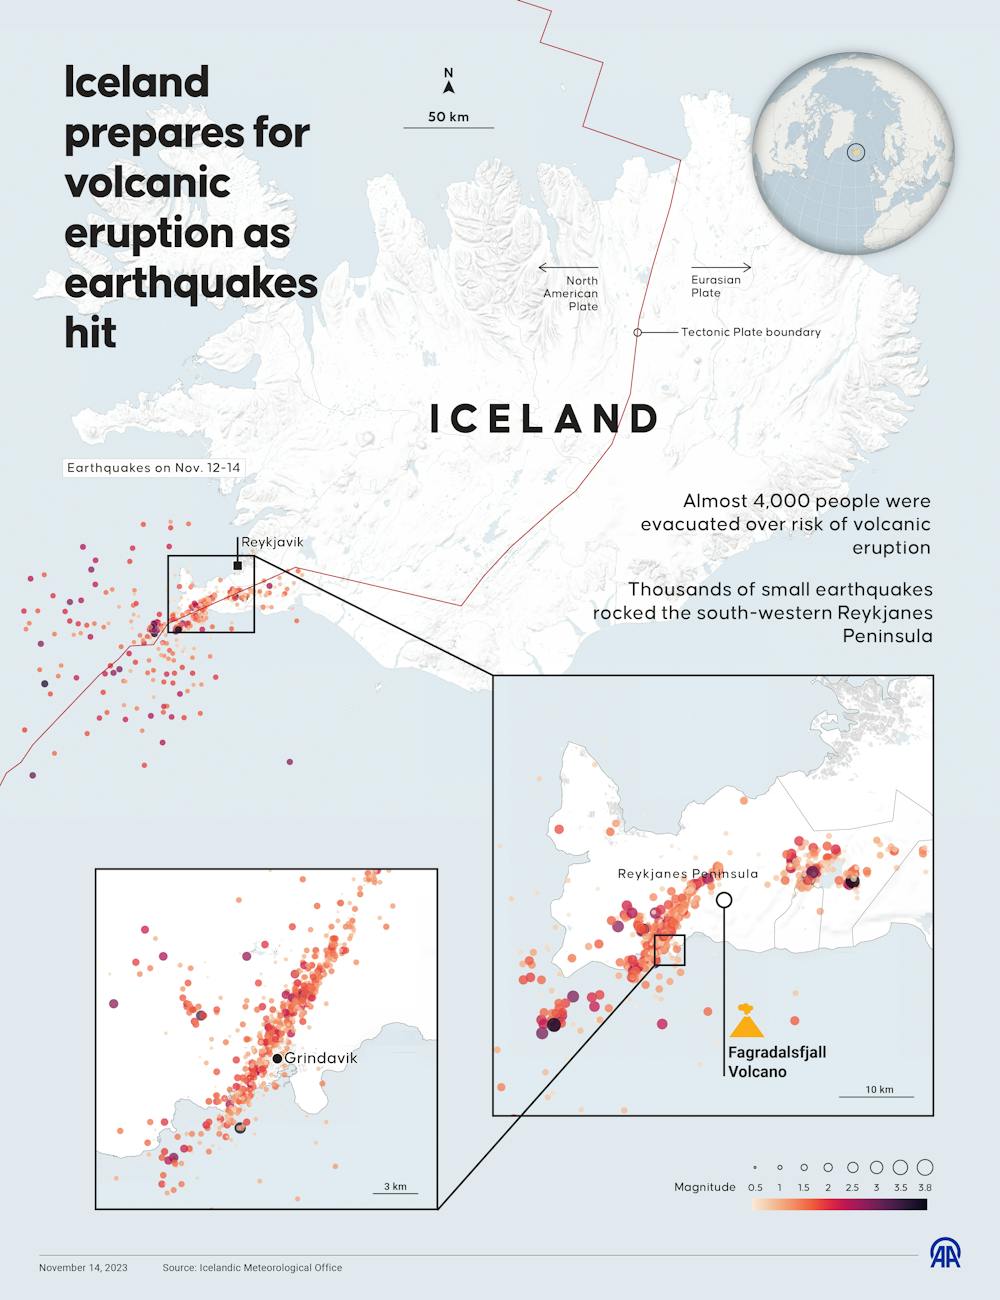 No Comment : en Islande les parois d'un volcan s'effondrent sous